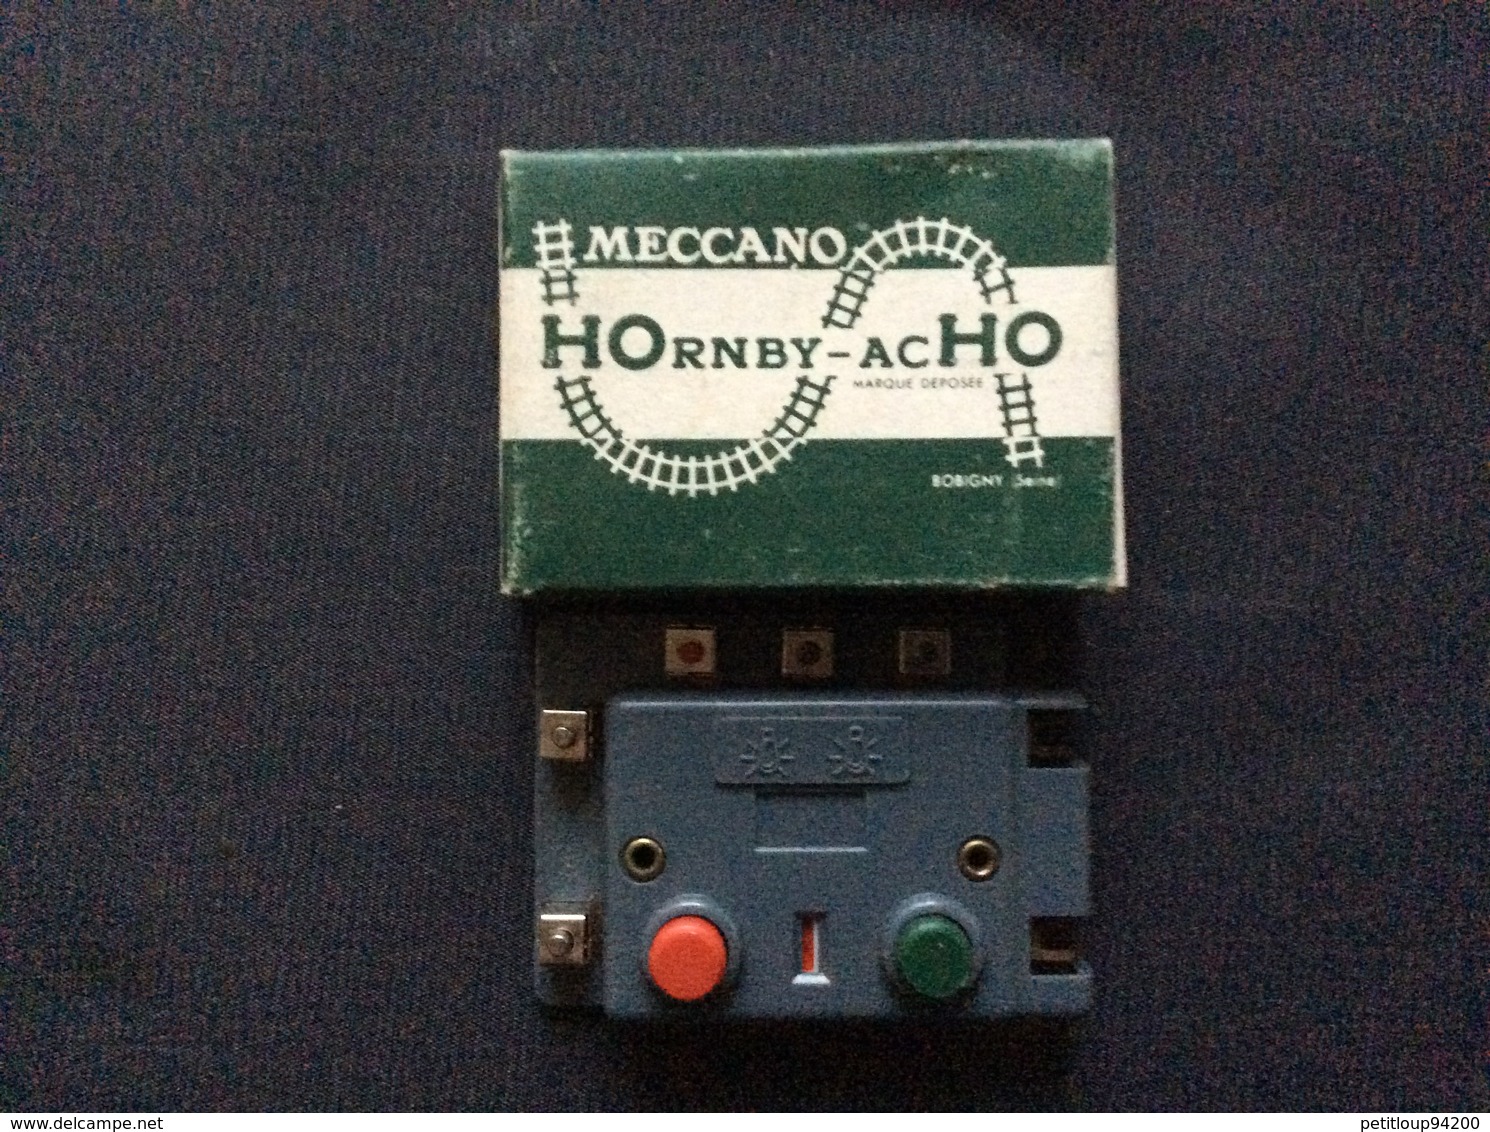 HORNBY-acHO MECCANO-TRIANG 1 Boîtier De Commande A Contact Permanent  Ref. 7840 - Comandi & Accessori Digitali